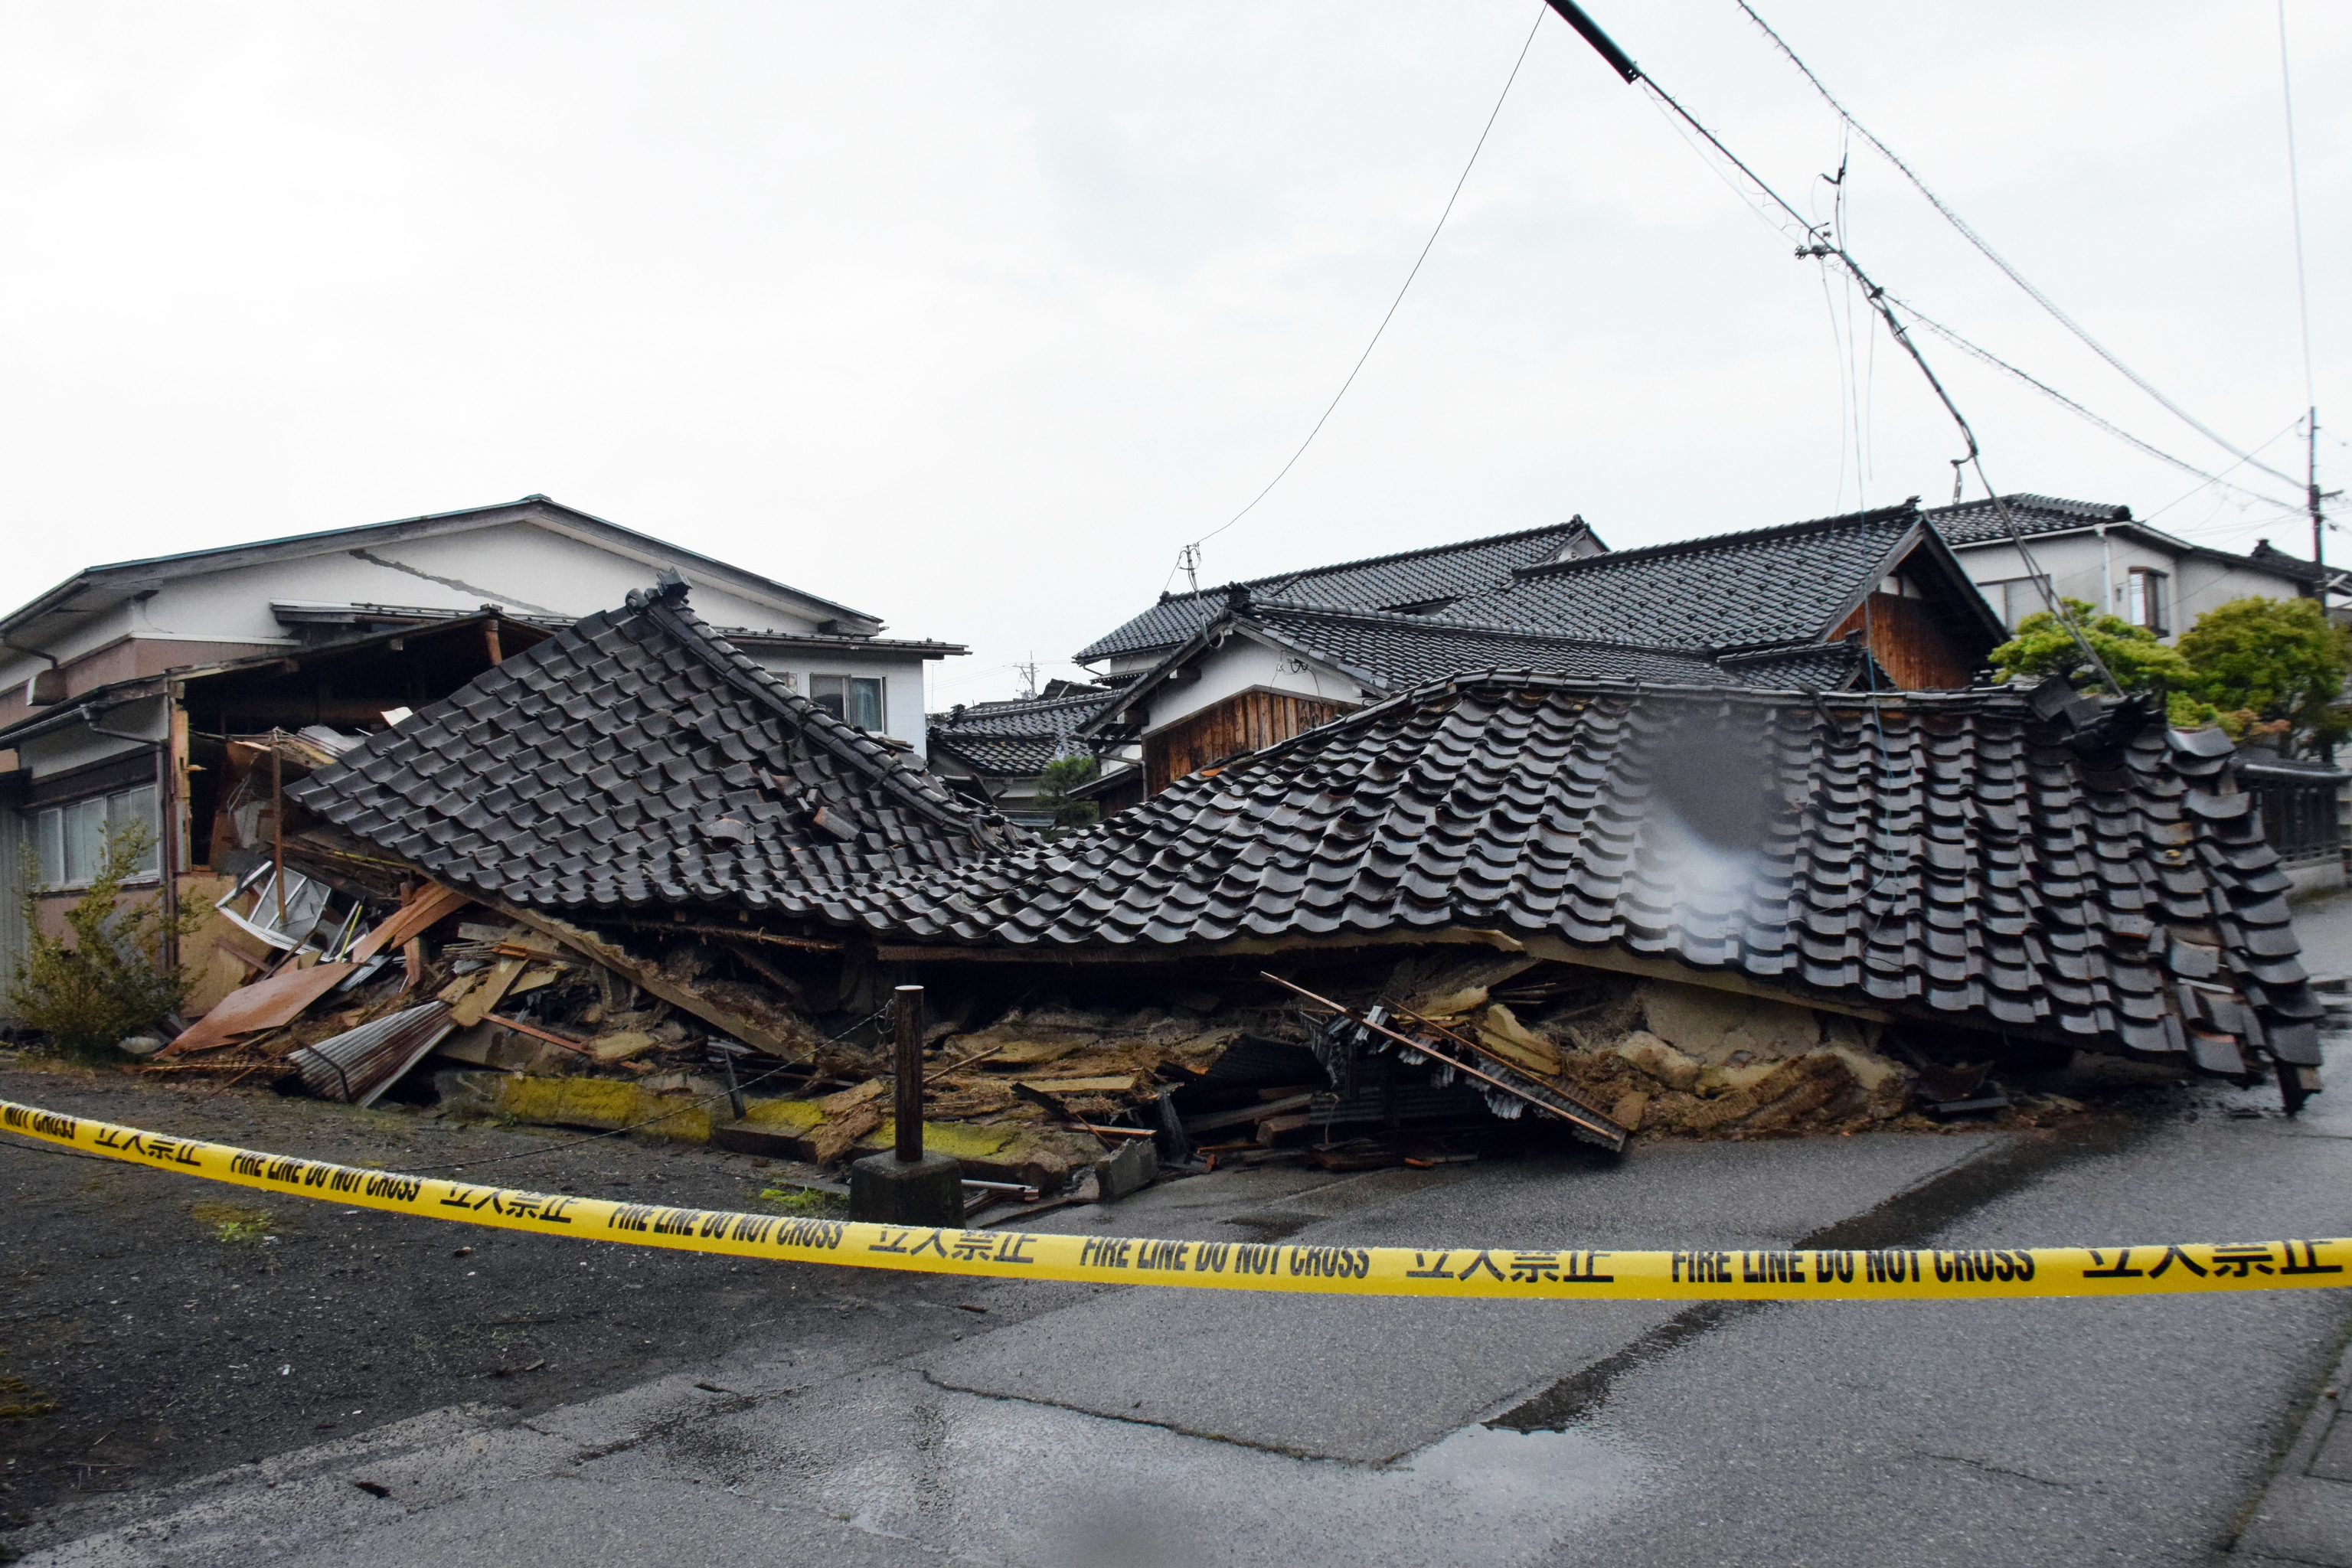 Una casa derrumbada tras el terremoto de magnitud 6,5 que sacudió un día antes la localidad de Suzu, en la prefectura de Ishikawa, en el centro de Japón, 06 de mayo de 2023. Según los últimos informes de las autoridades, una persona murió y 23 resultaron heridas tras el seísmo que sacudió la península de Noto el 05 de mayo de 2023.